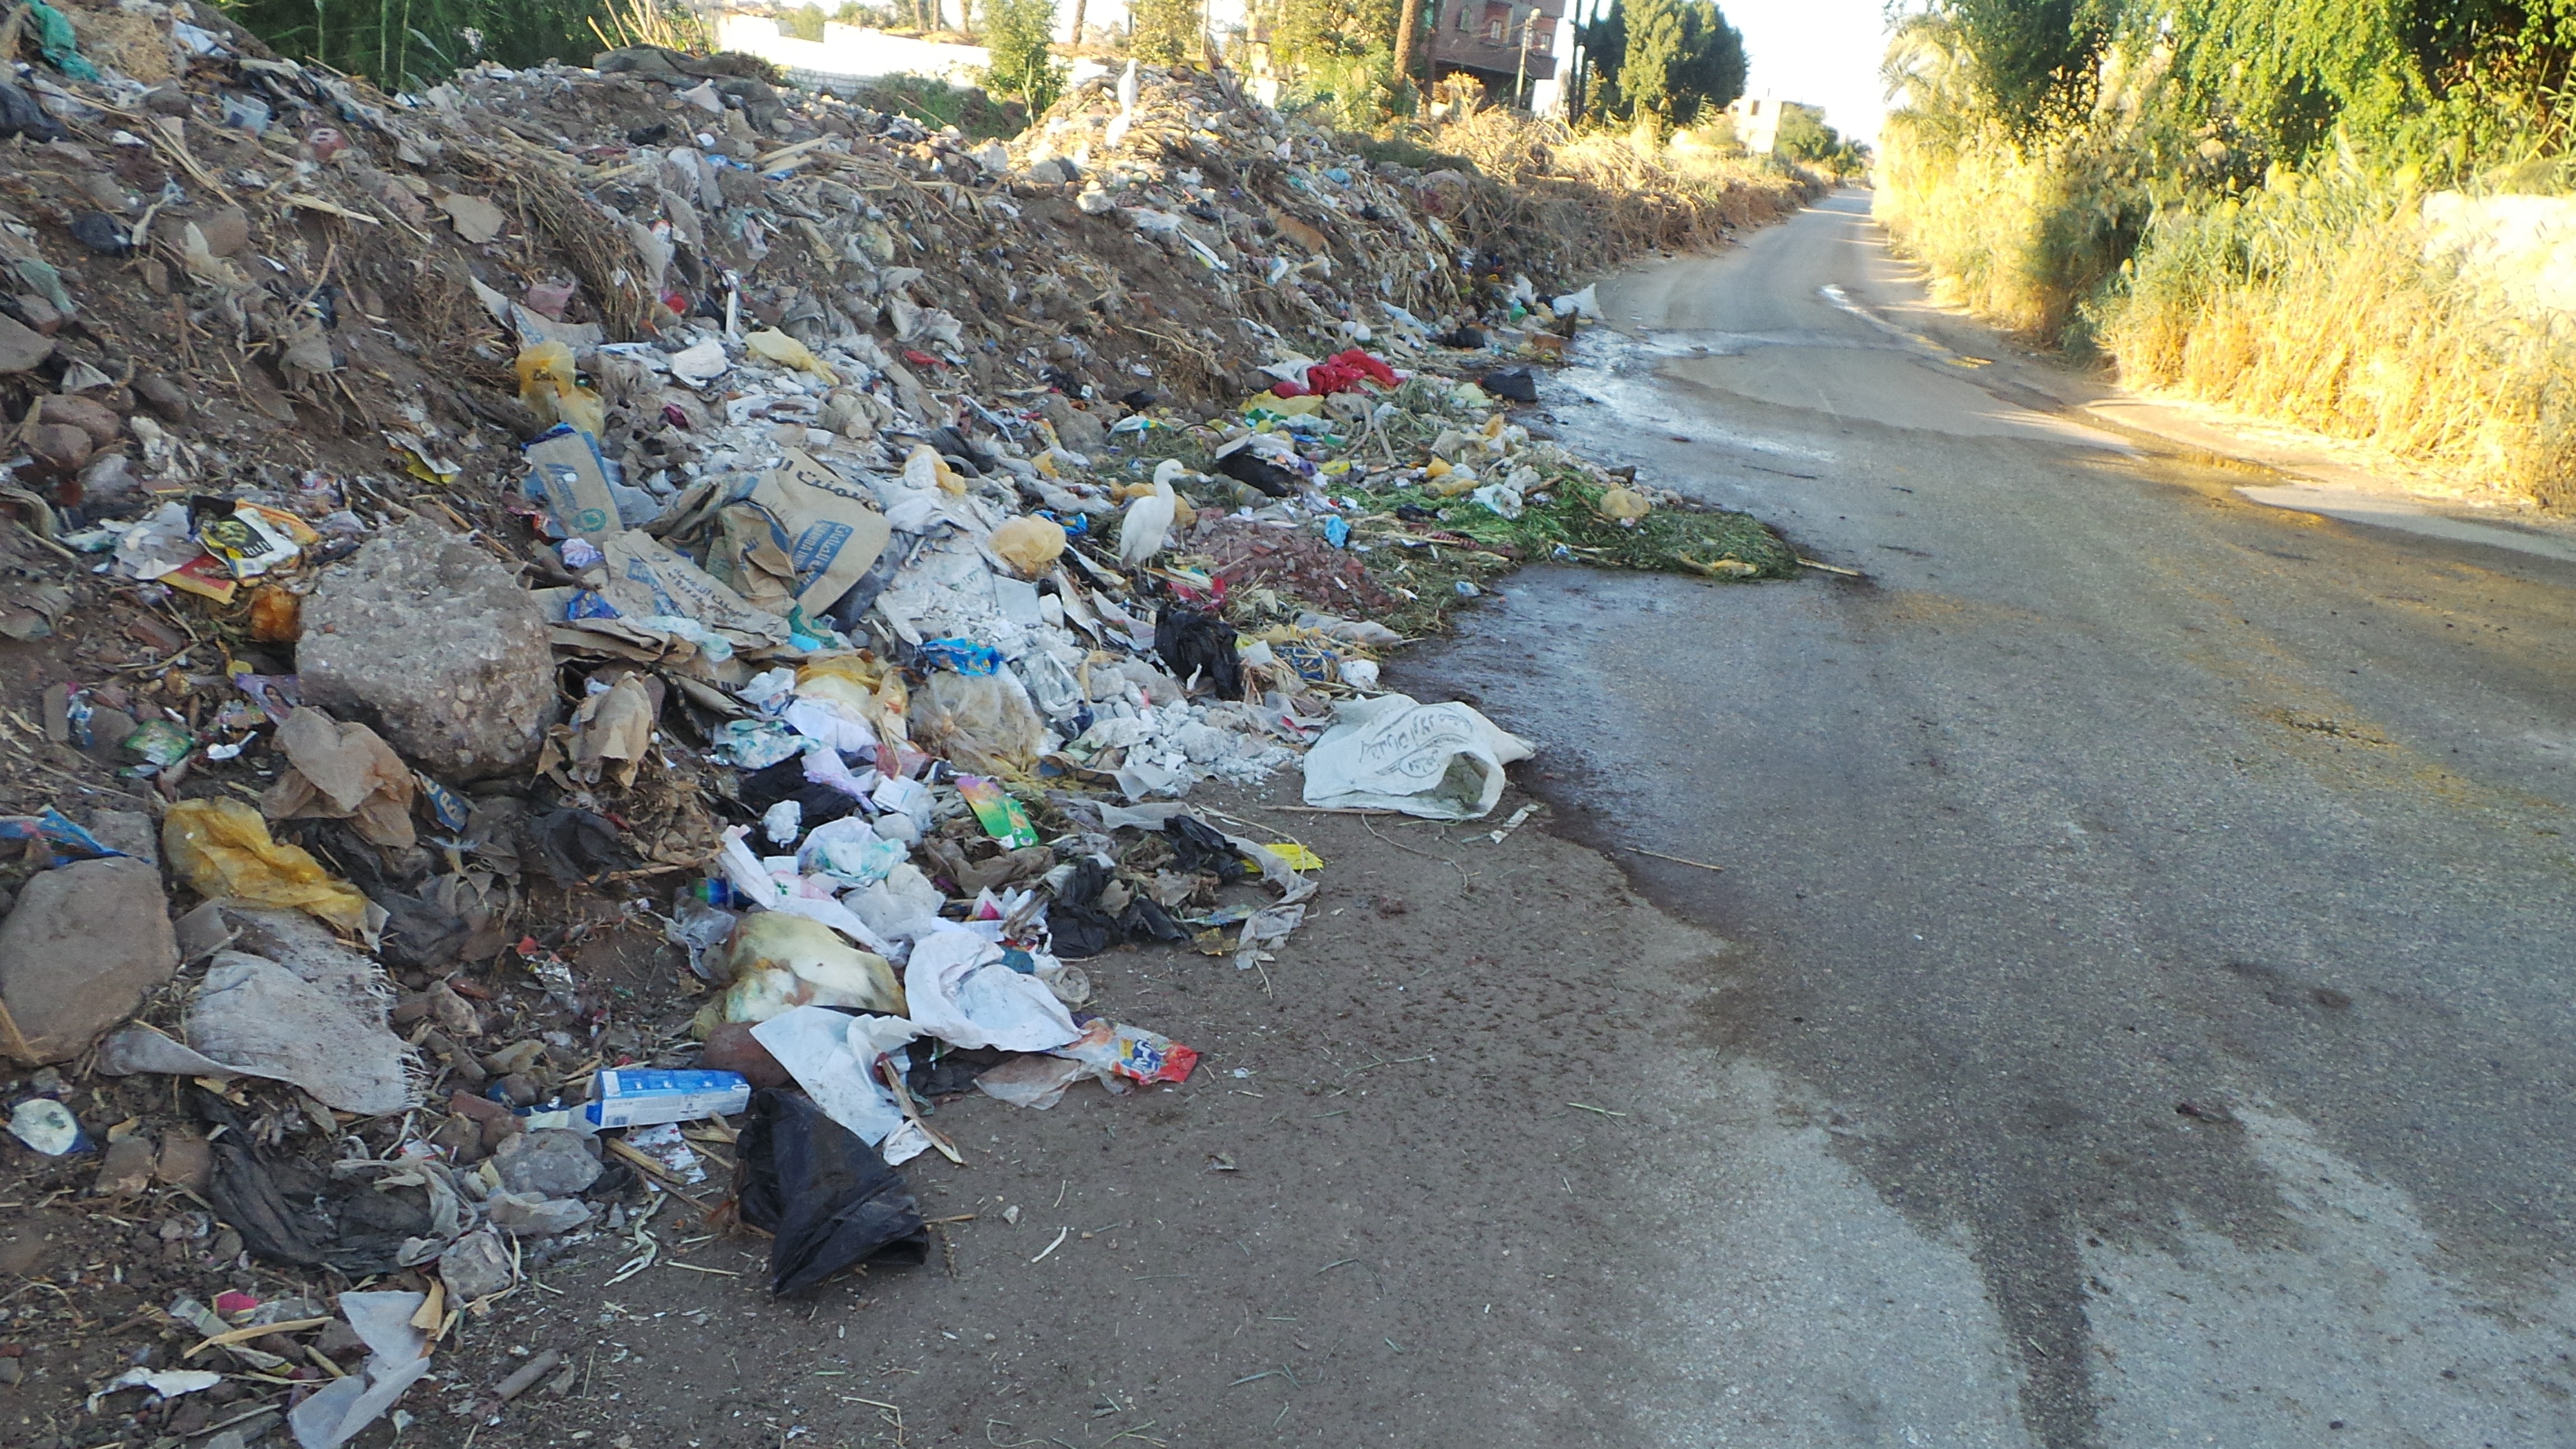  القمامة منتشرة على جوانب الطريق